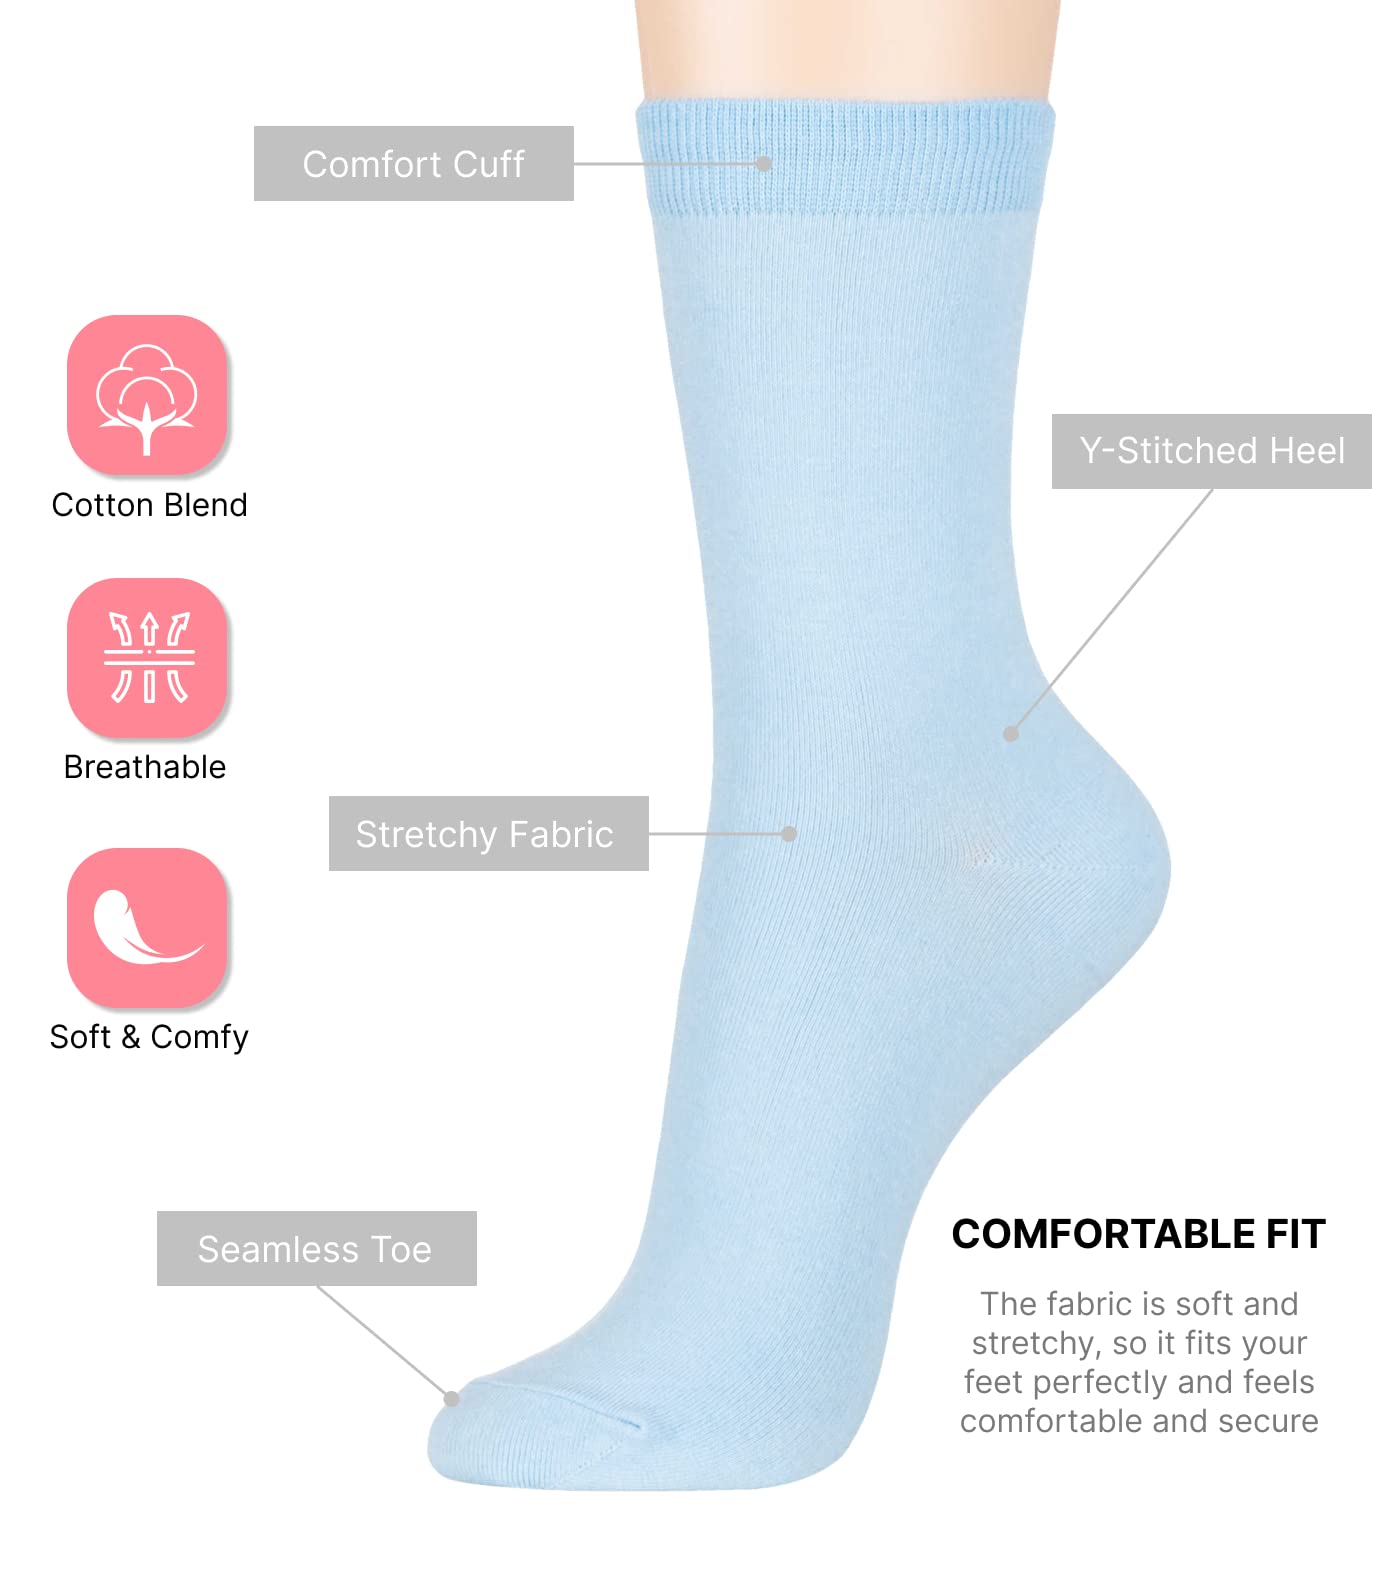 Women's Basic Socks_Pastel Sky Blue